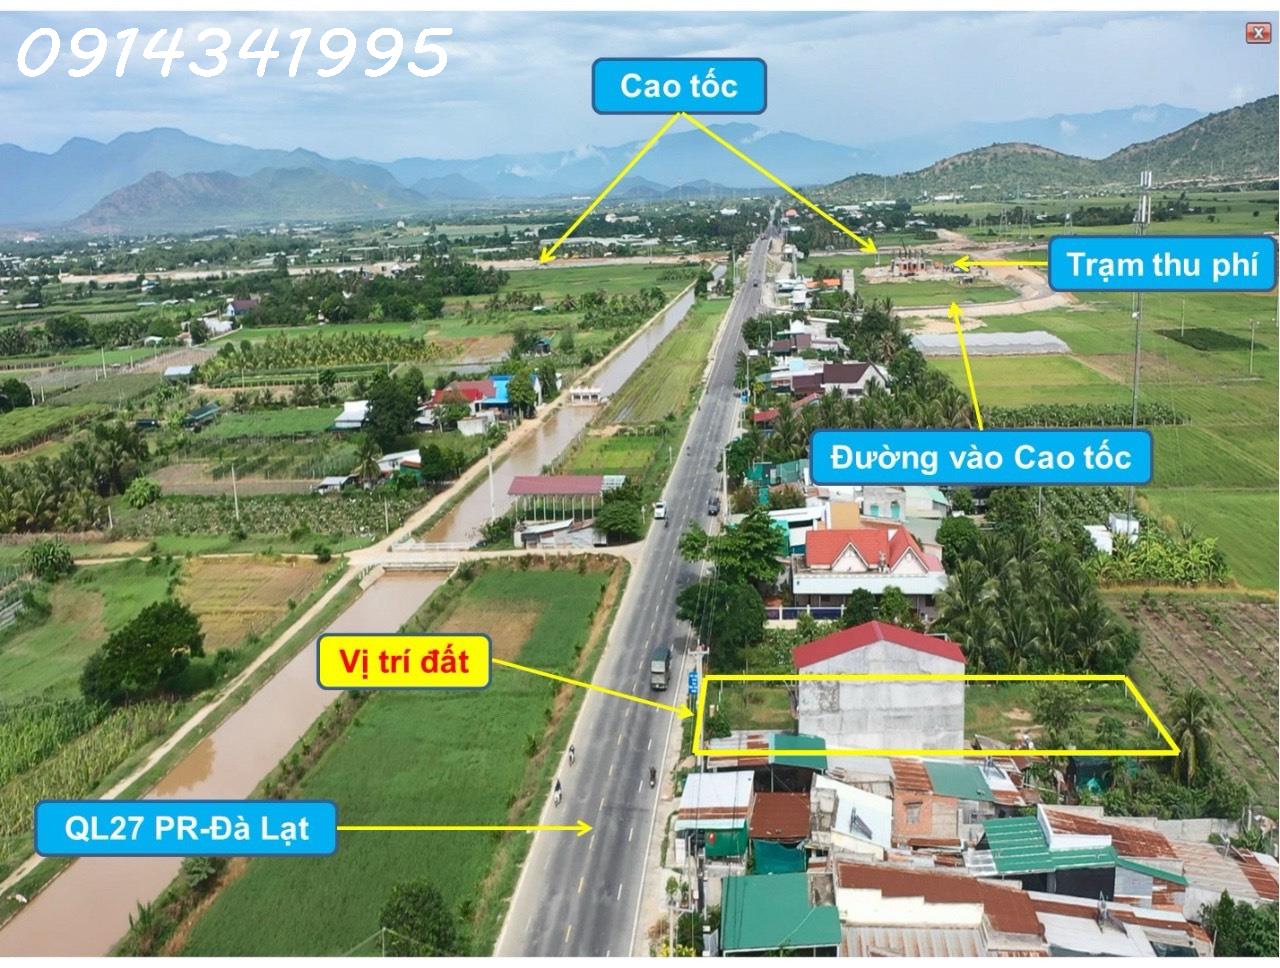 Nút giao cao tốc Ninh Thuận. Mặt đường QL27A, 20x50m sân bay Thành Sơn 5km, QL1 6km - Ảnh chính